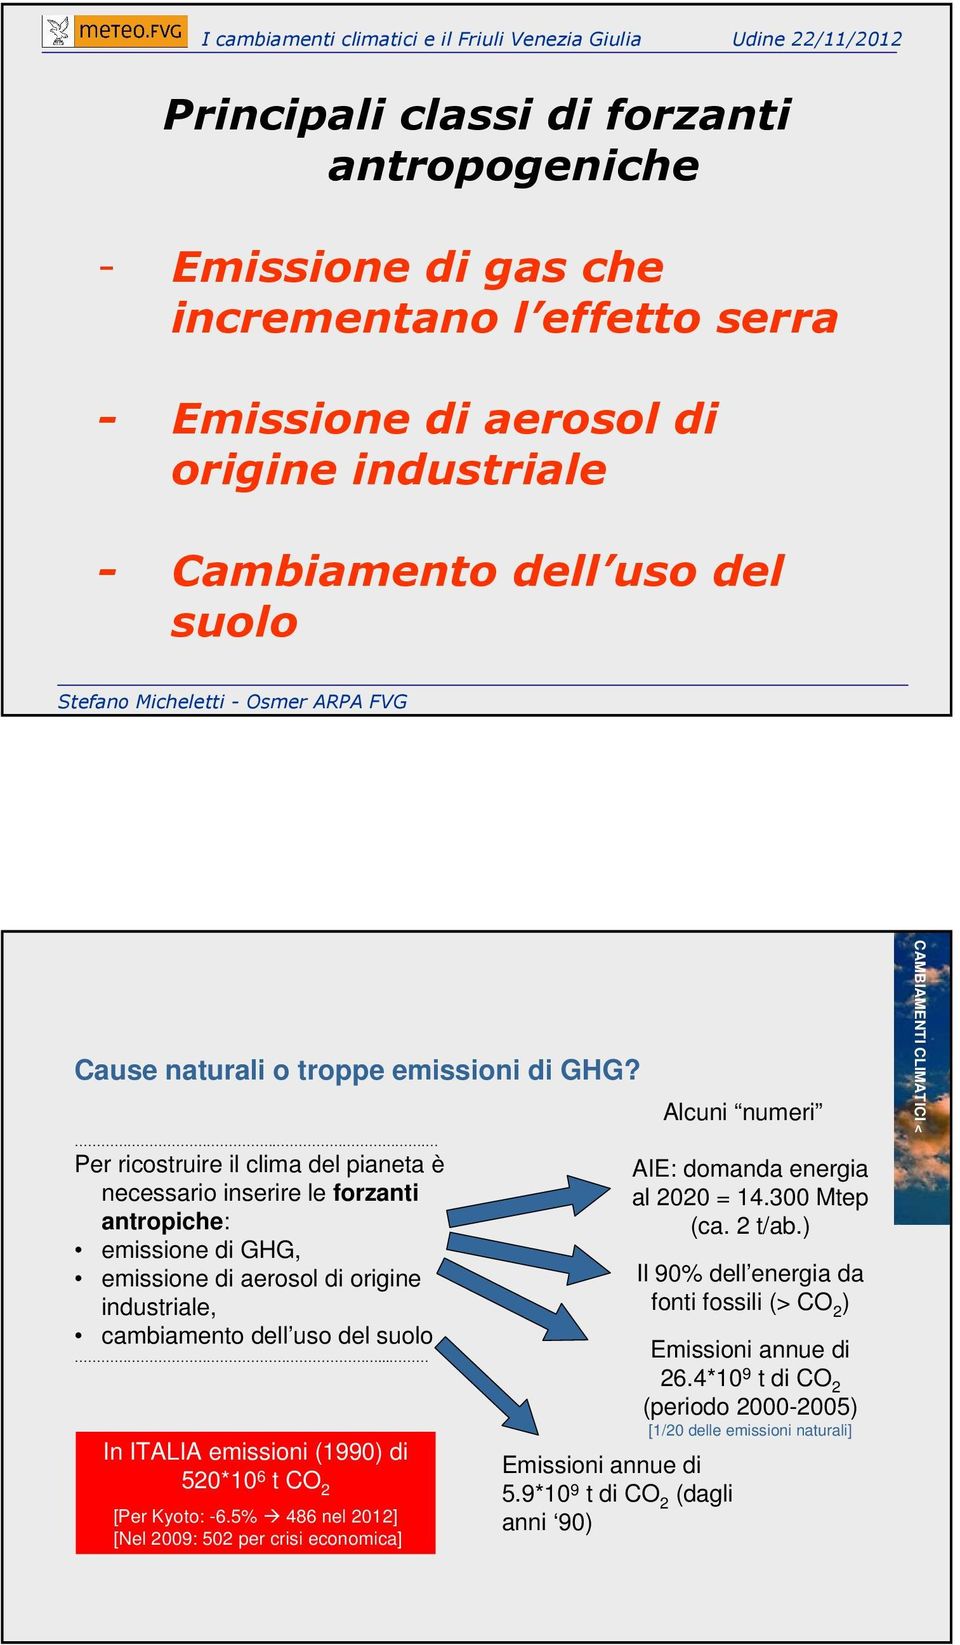 .. In ITALIA emissioni (1990) di 520*10 6 t CO 2 [Per Kyoto: -6.5% 486 nel 2012] [Nel 2009: 502 per crisi economica] Emissioni annue di 5.